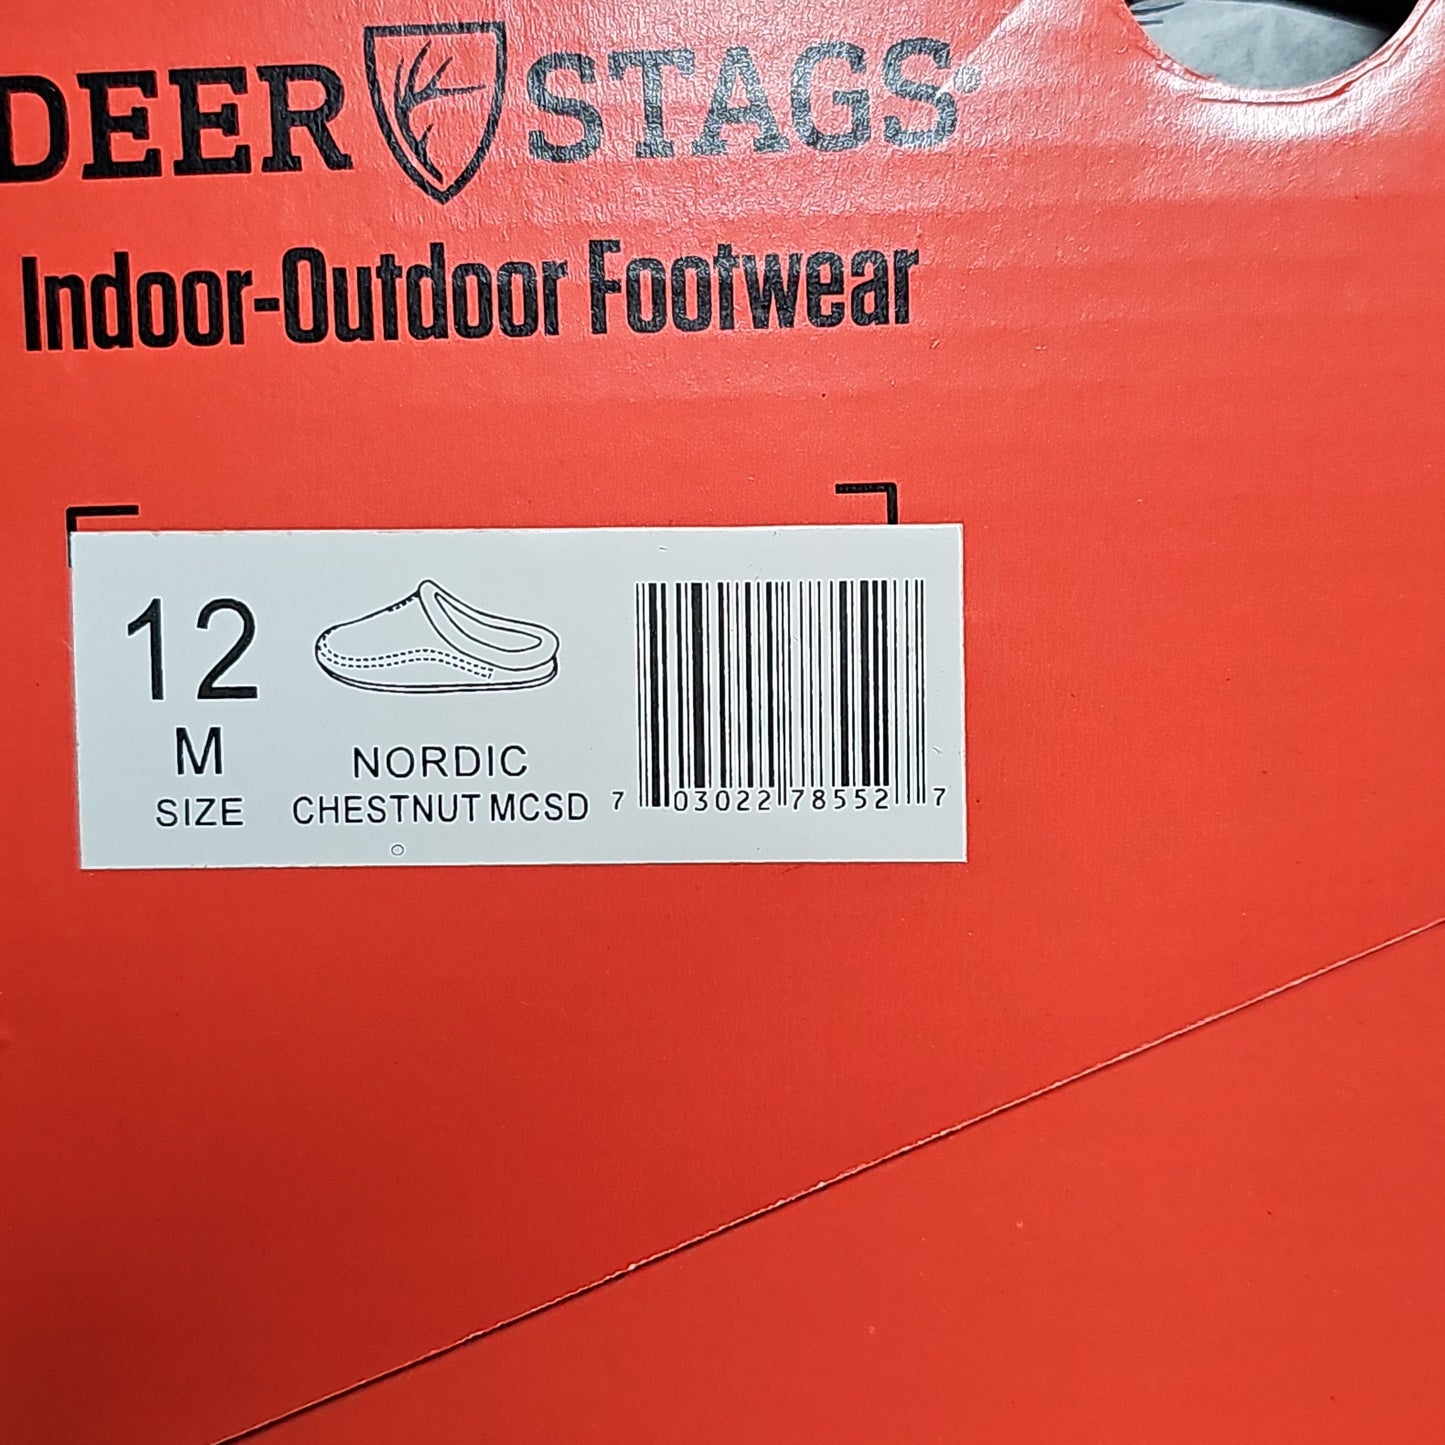 DEER STAGS Nordic Unisex Microsuede Slipper in Chestnut Sz 12 Mens (New)